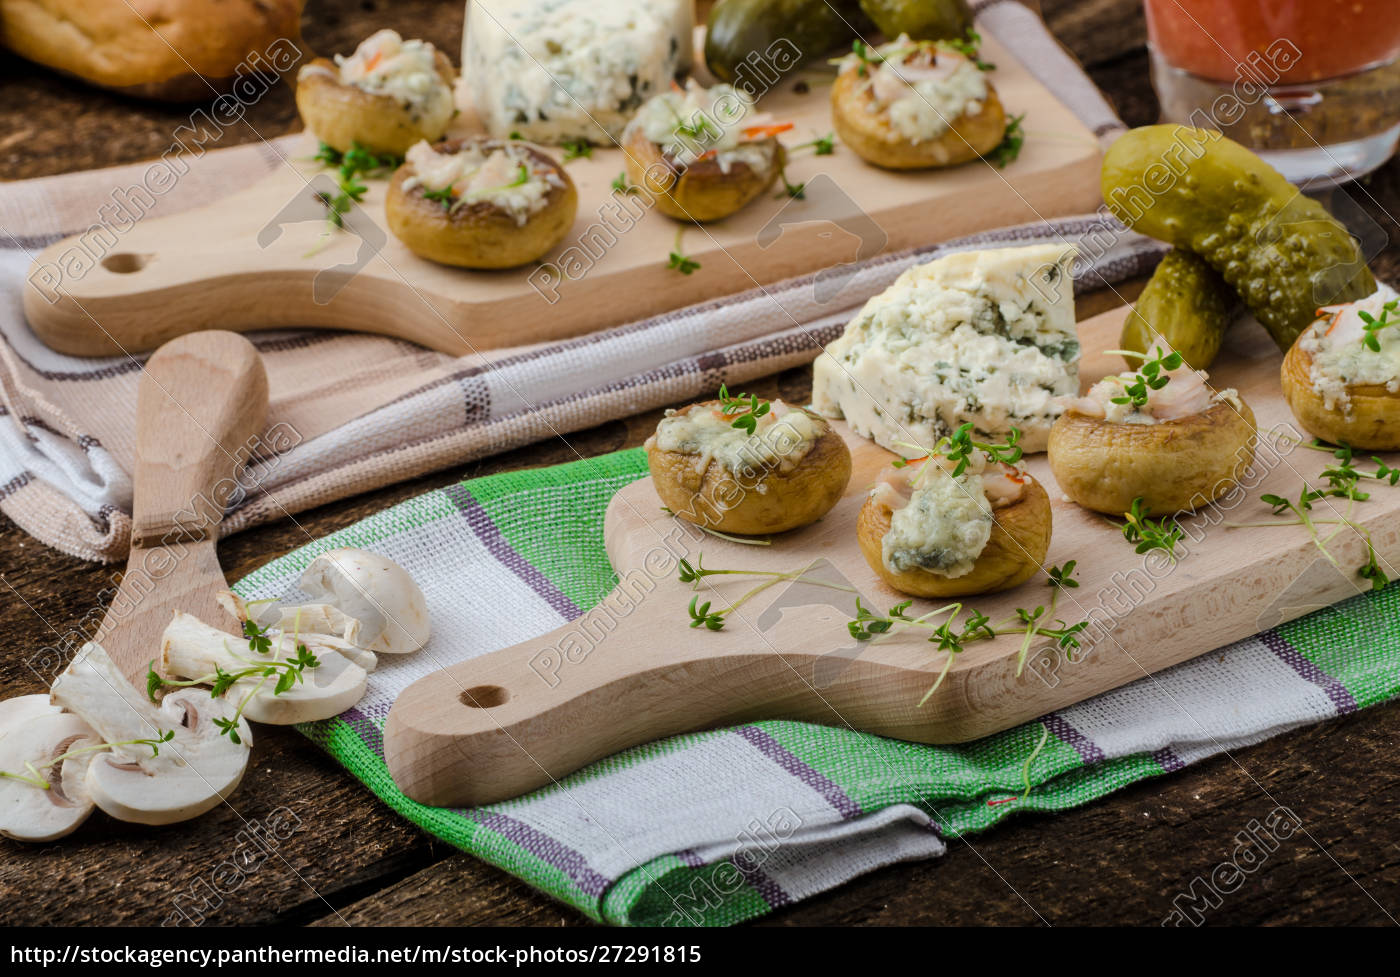 Mit Käse gefüllte Pilze - Lizenzfreies Bild - #27291815 | Bildagentur ...